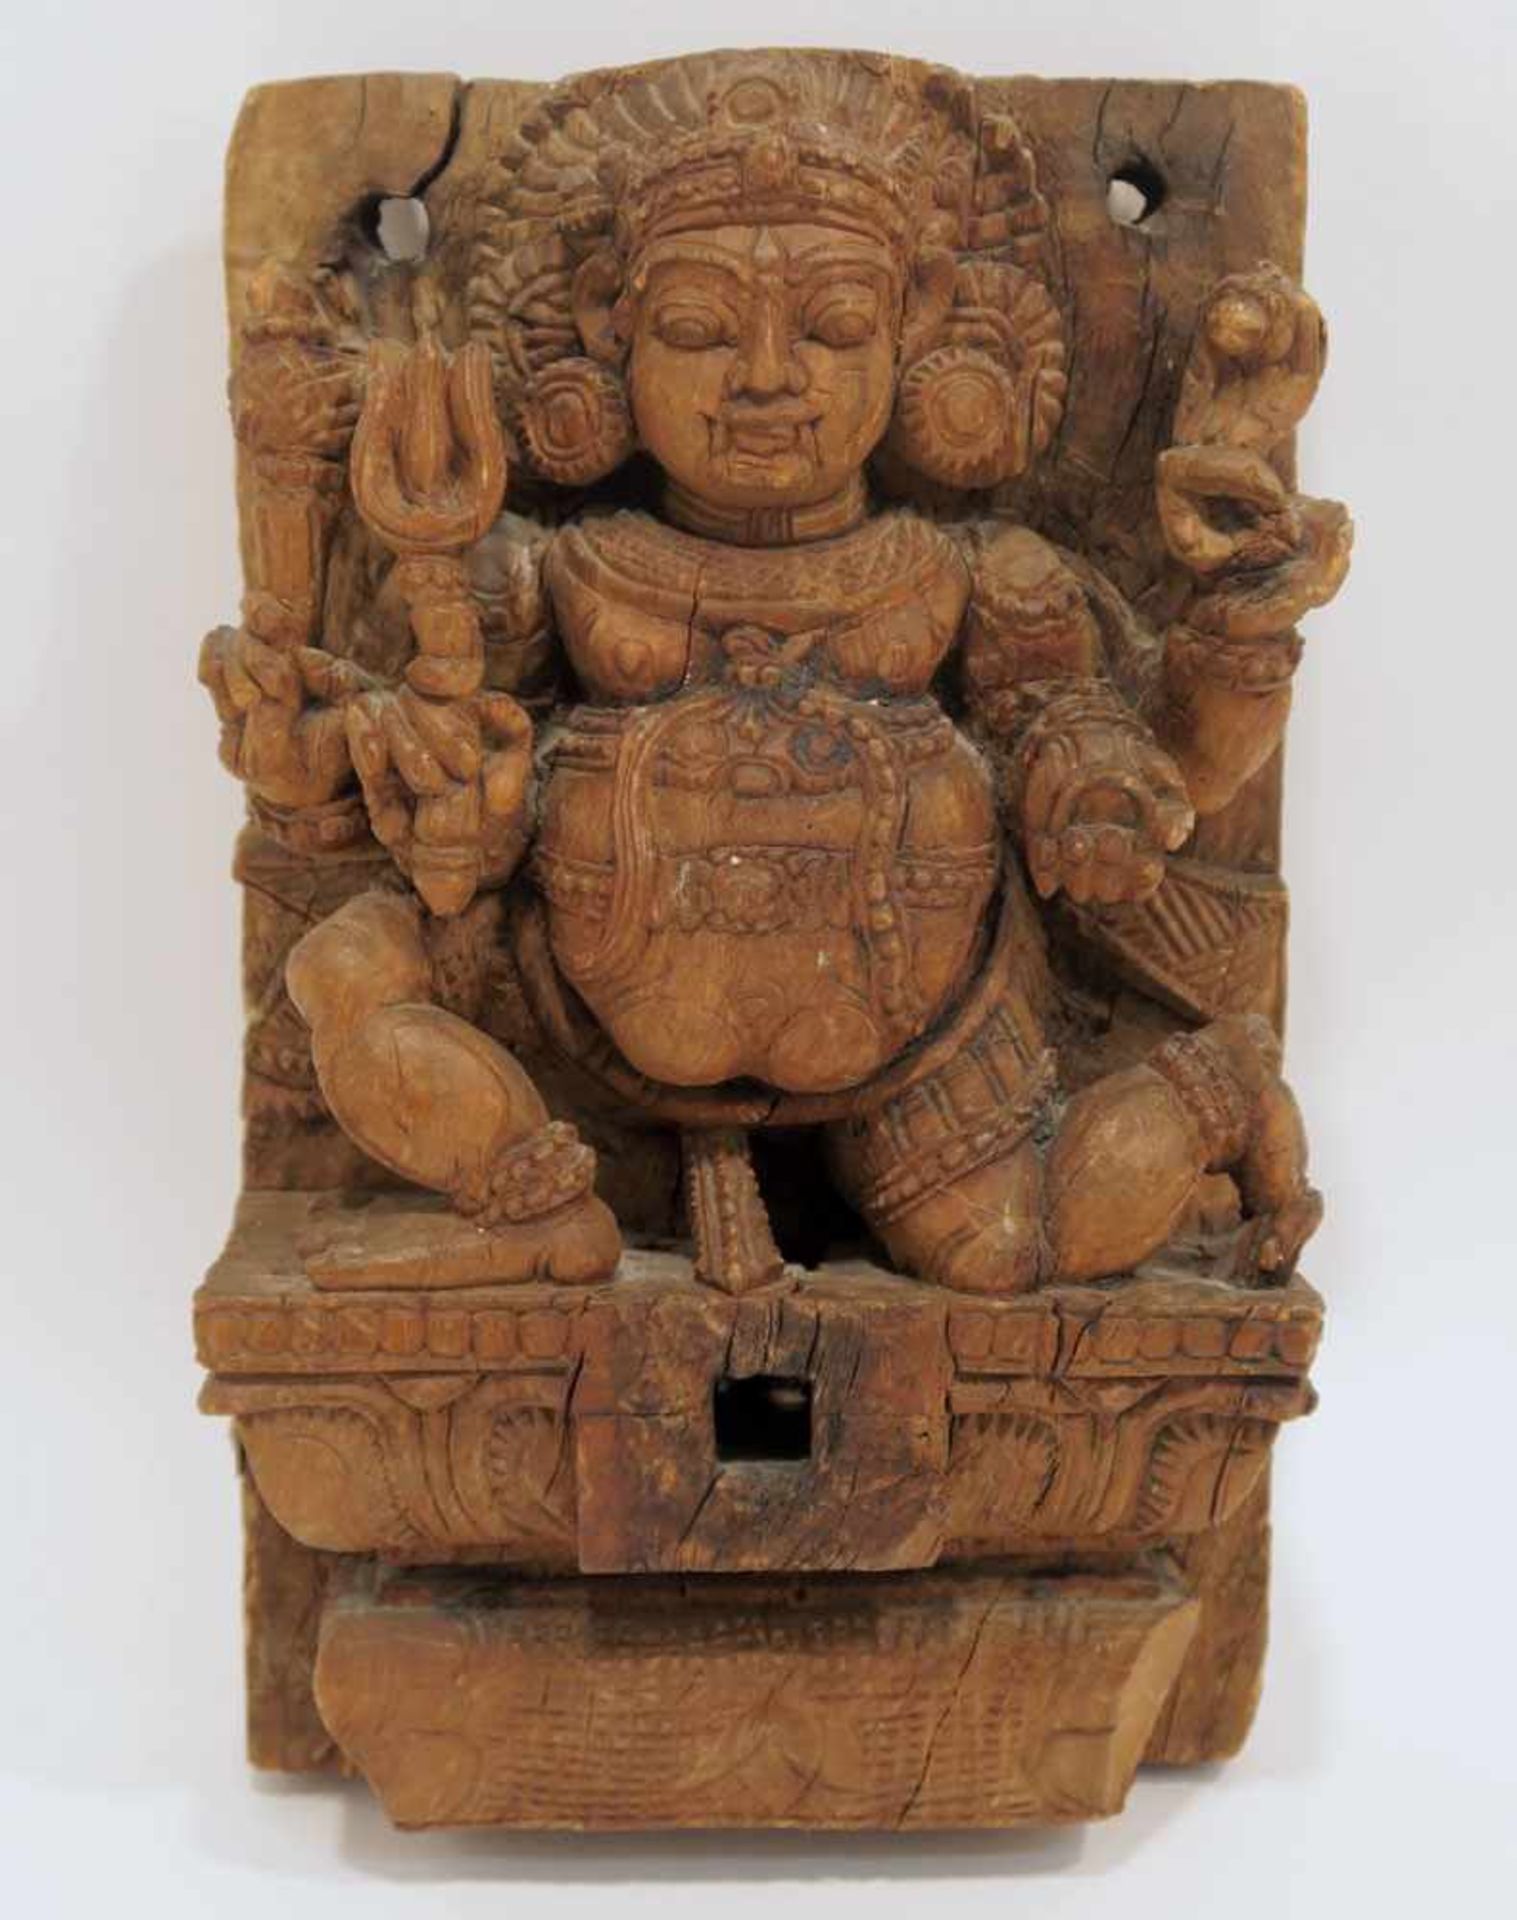 Reliefschnitzerei: vierarmige Gottheit mit Dreizack Indien (?). Holz, geschnitzt, ungefasst.